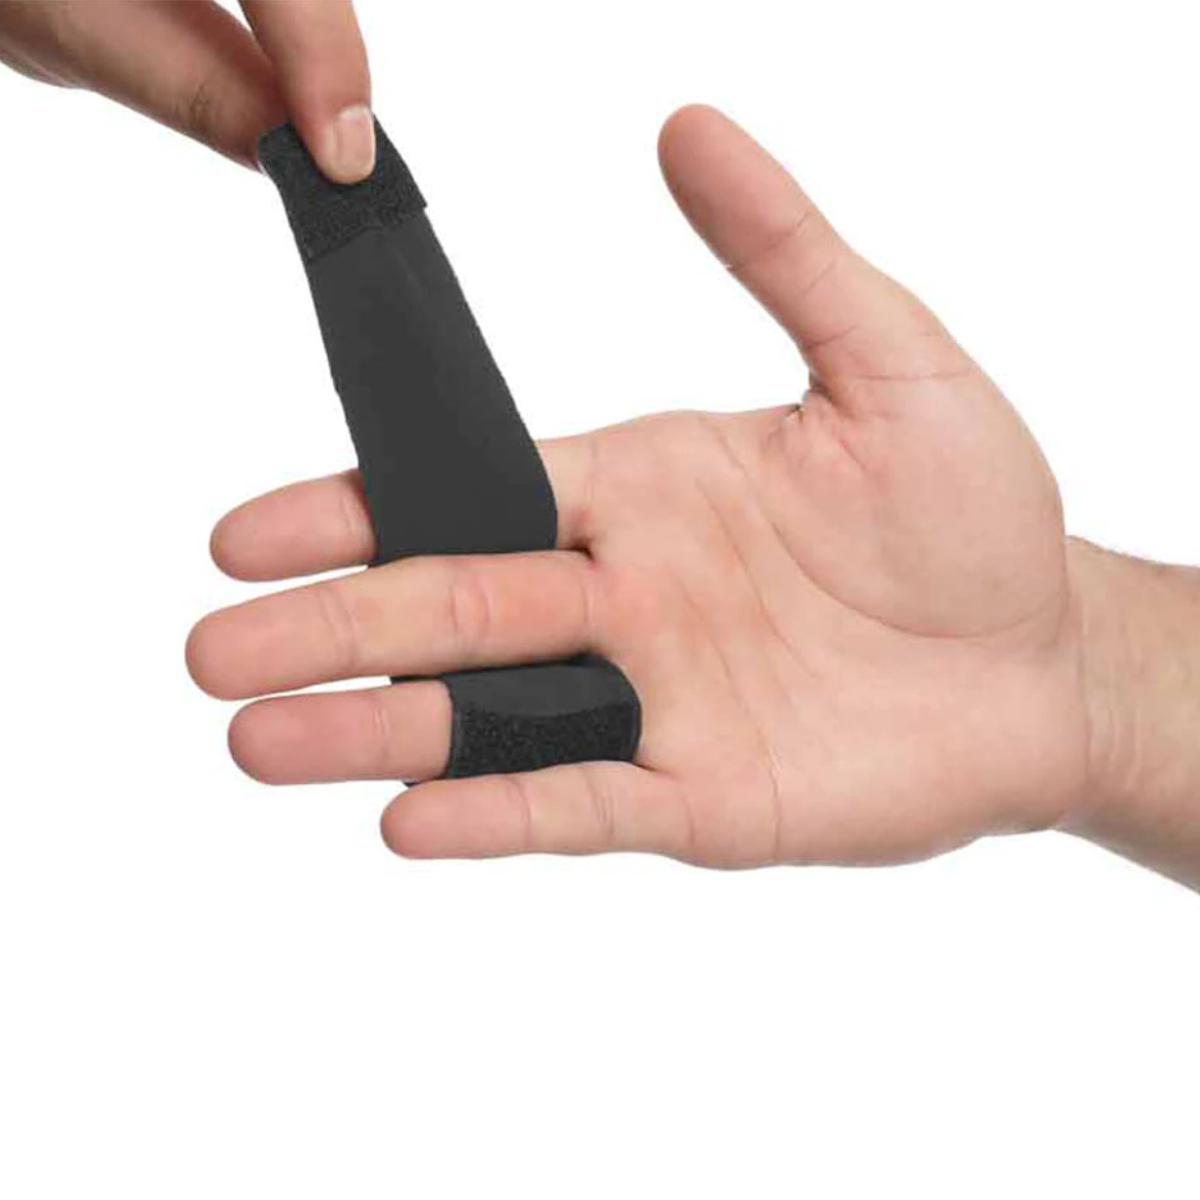  finger for supporter 2 ps finger for finger protector .. finger spring finger support person difference . finger middle finger medicine finger small finger fixation .